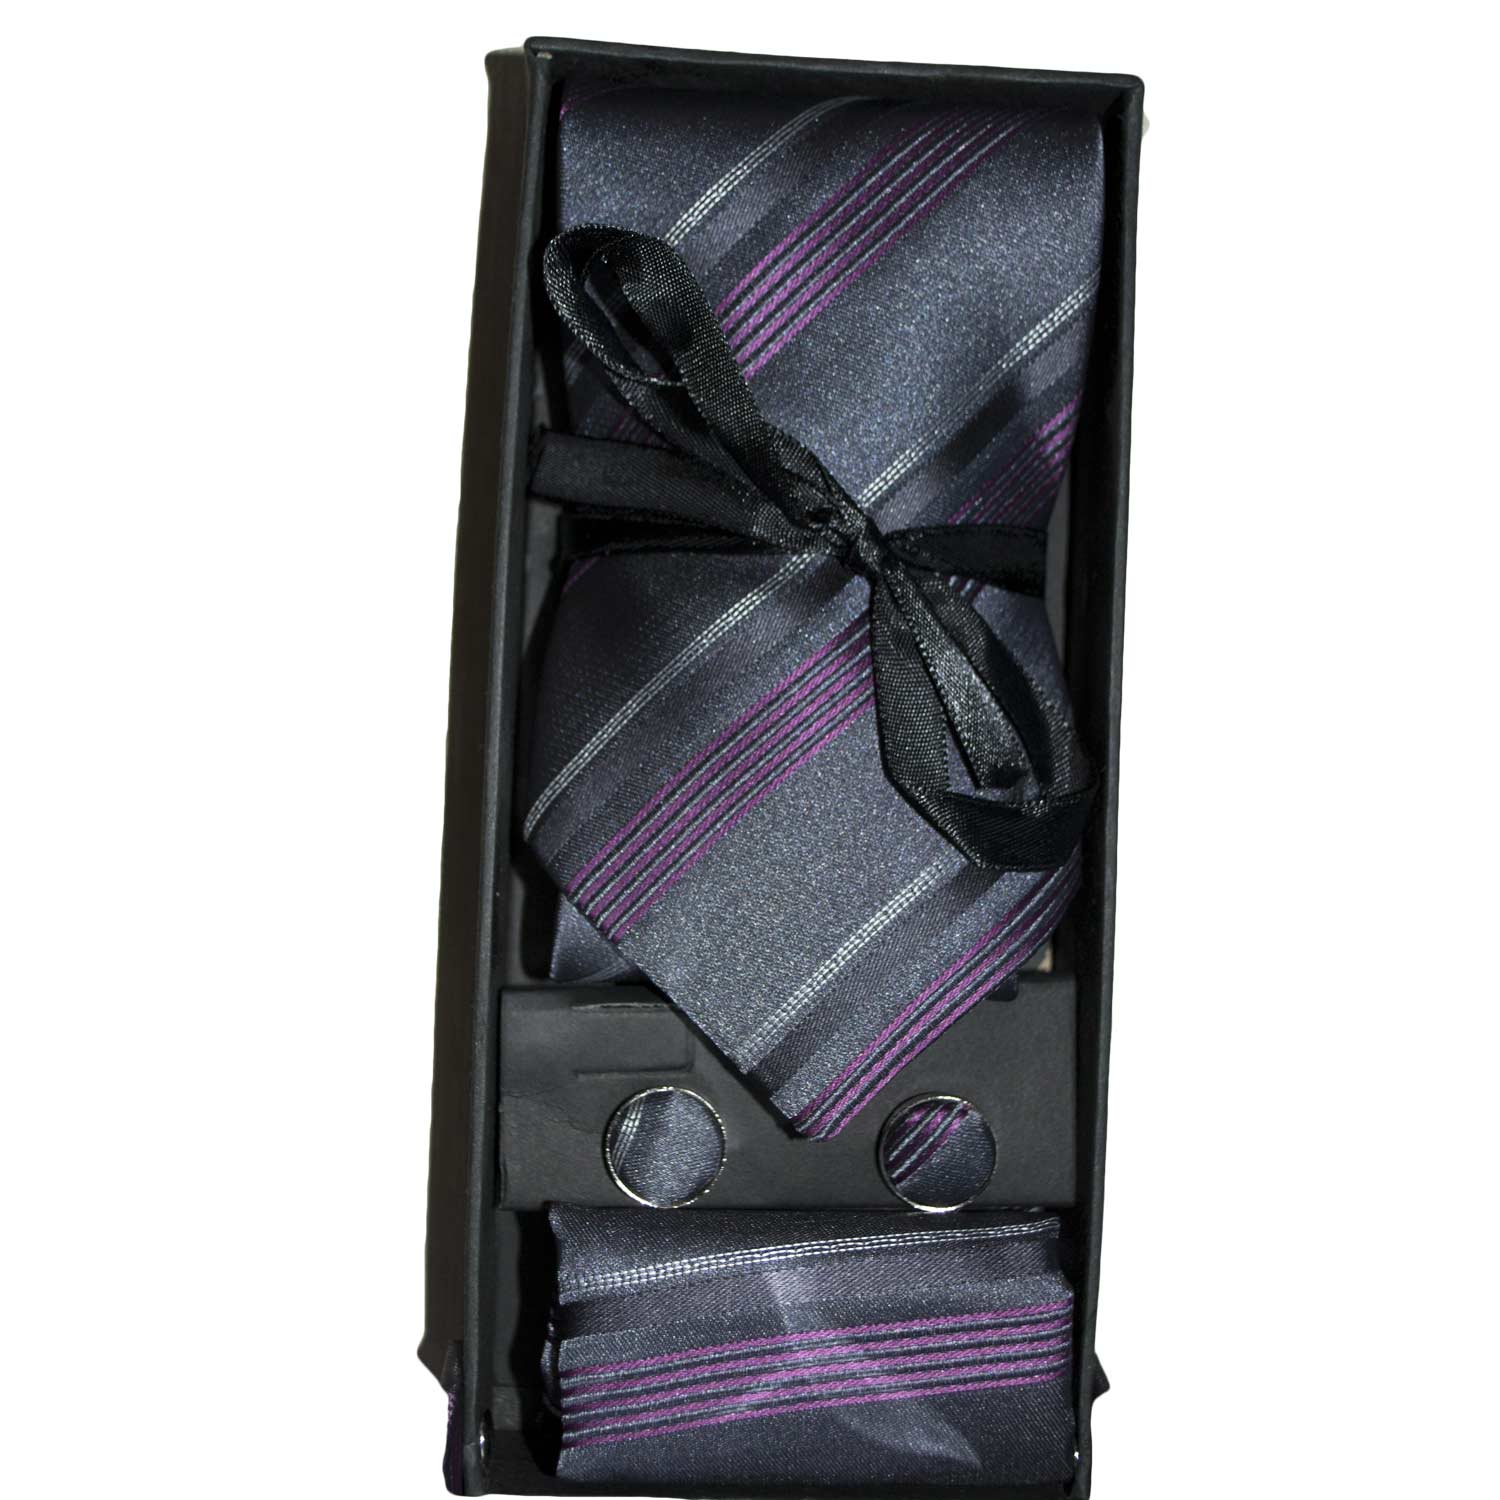 Set coordinato uomo cravatte  con gemelli e pochette nero viola fantasia righe elegante cerimonia.